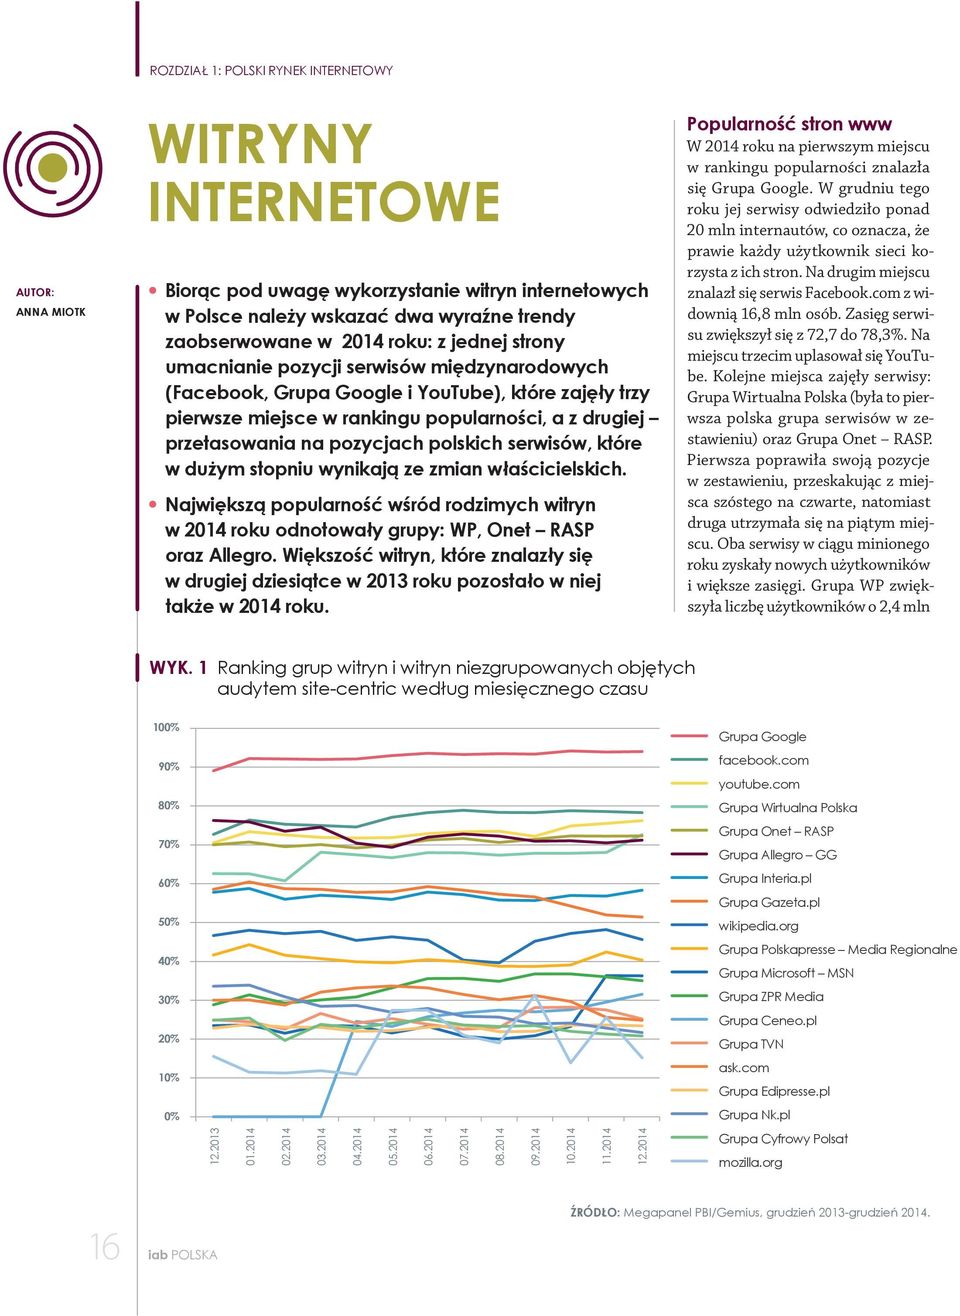 polskich serwisów, które w dużym stopniu wynikają ze zmian właścicielskich. Największą popularność wśród rodzimych witryn w 2014 roku odnotowały grupy: WP, Onet RASP oraz Allegro.